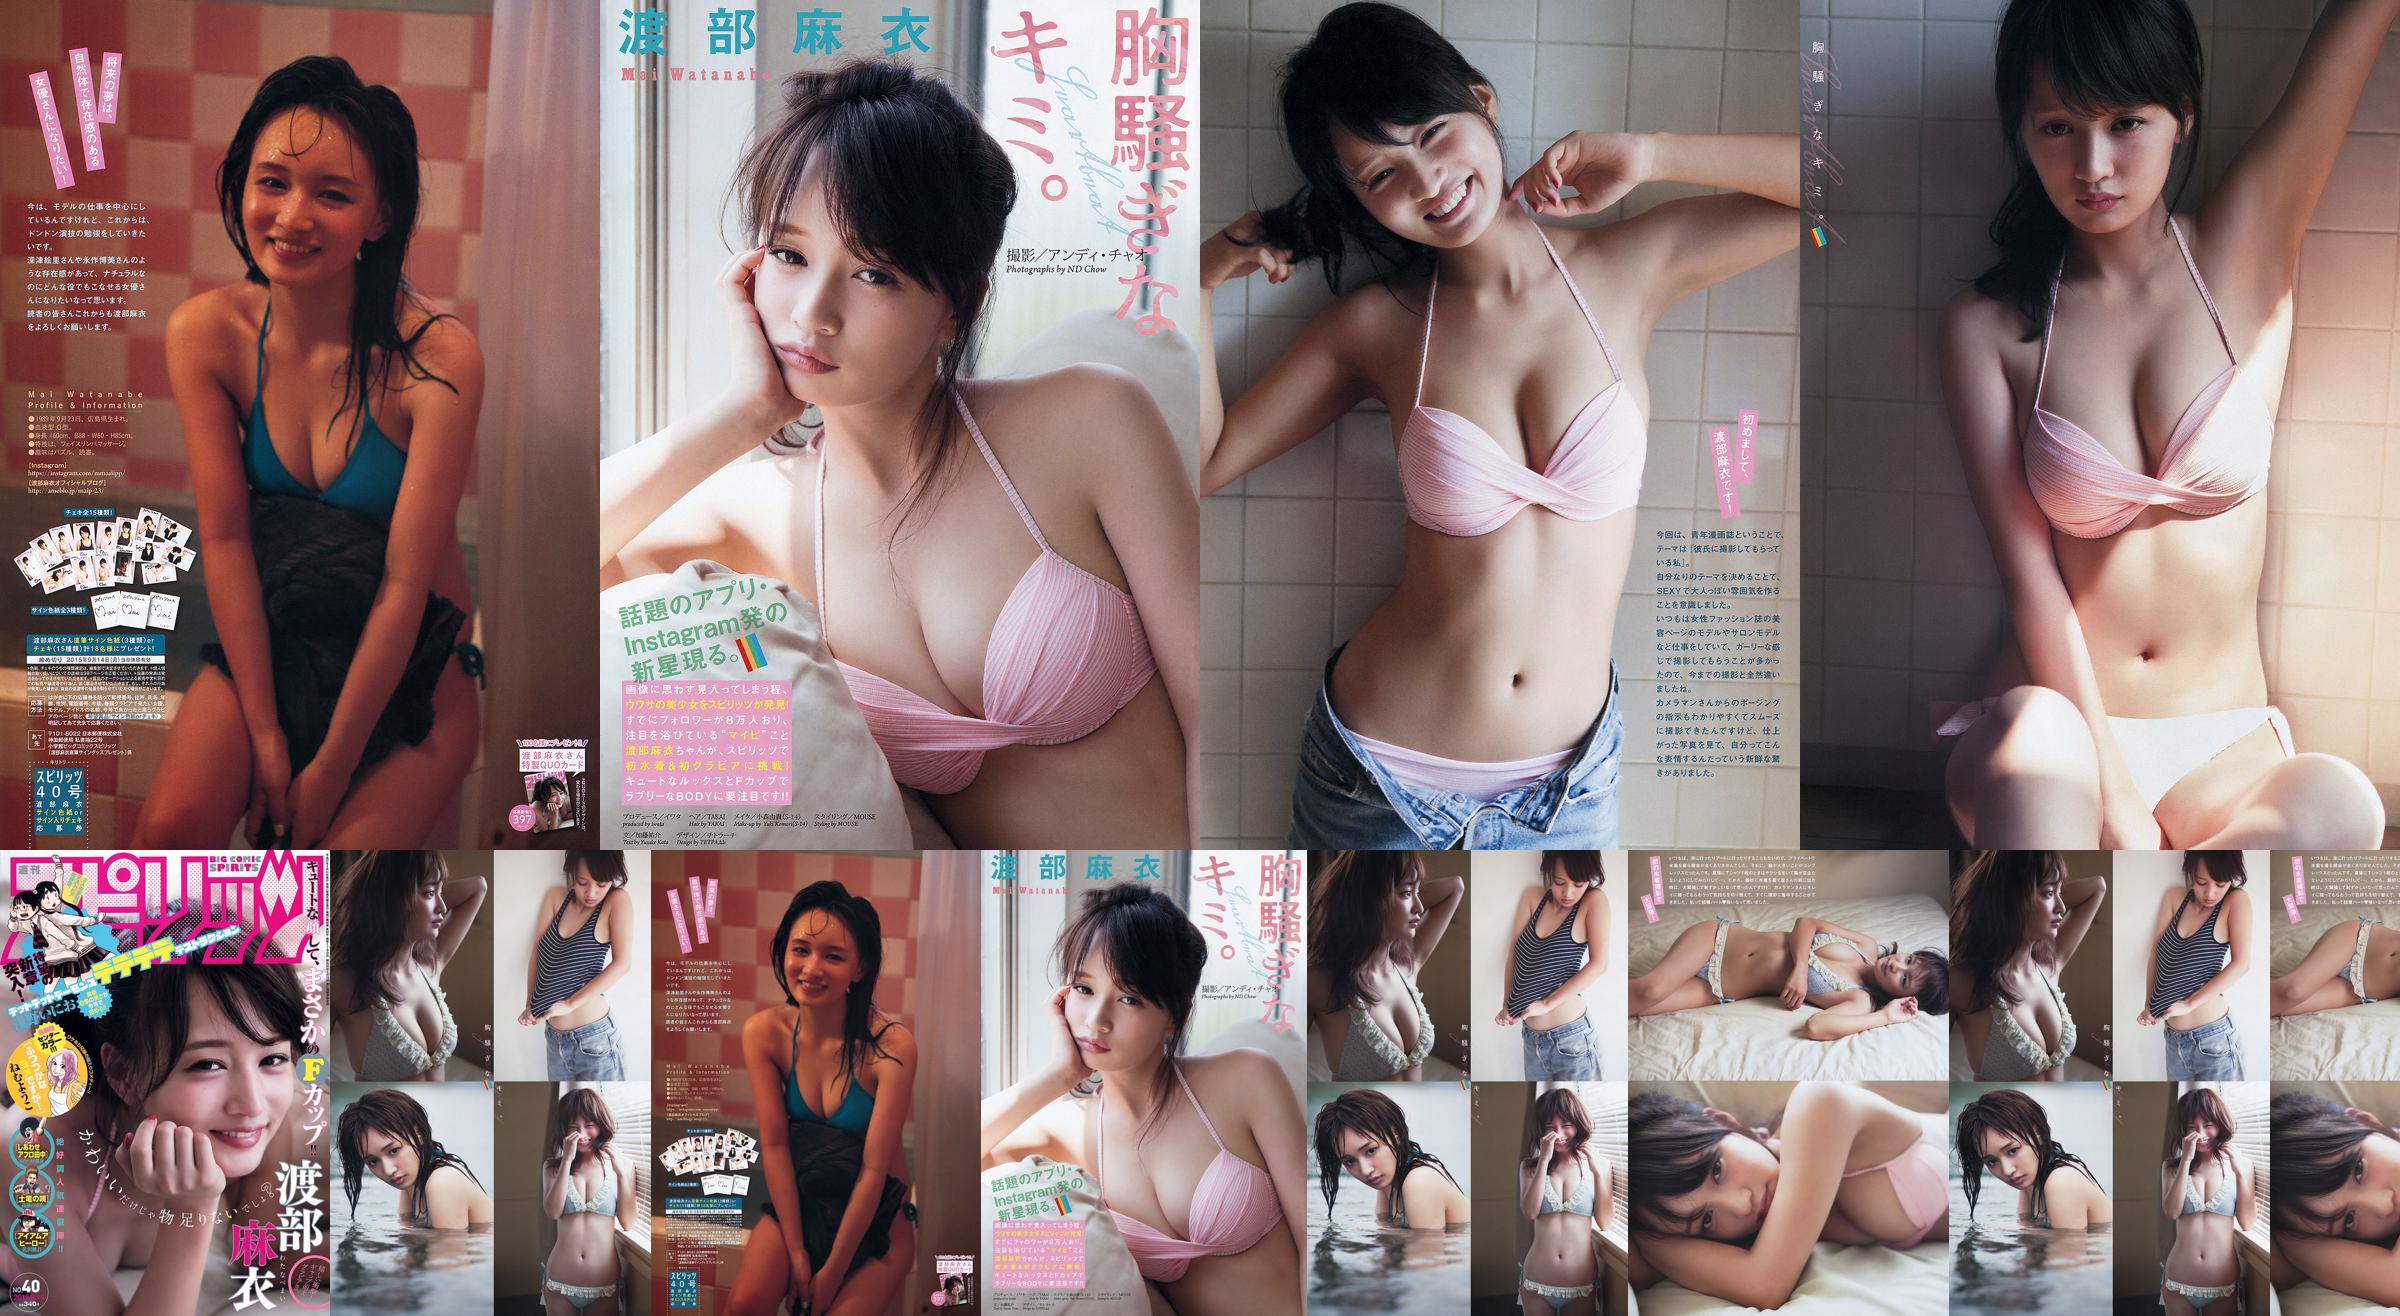 [Wöchentliche große Comic-Spirituosen] Watanabe Mai 2015 Nr. 40 Fotomagazin No.67dc5f Seite 1